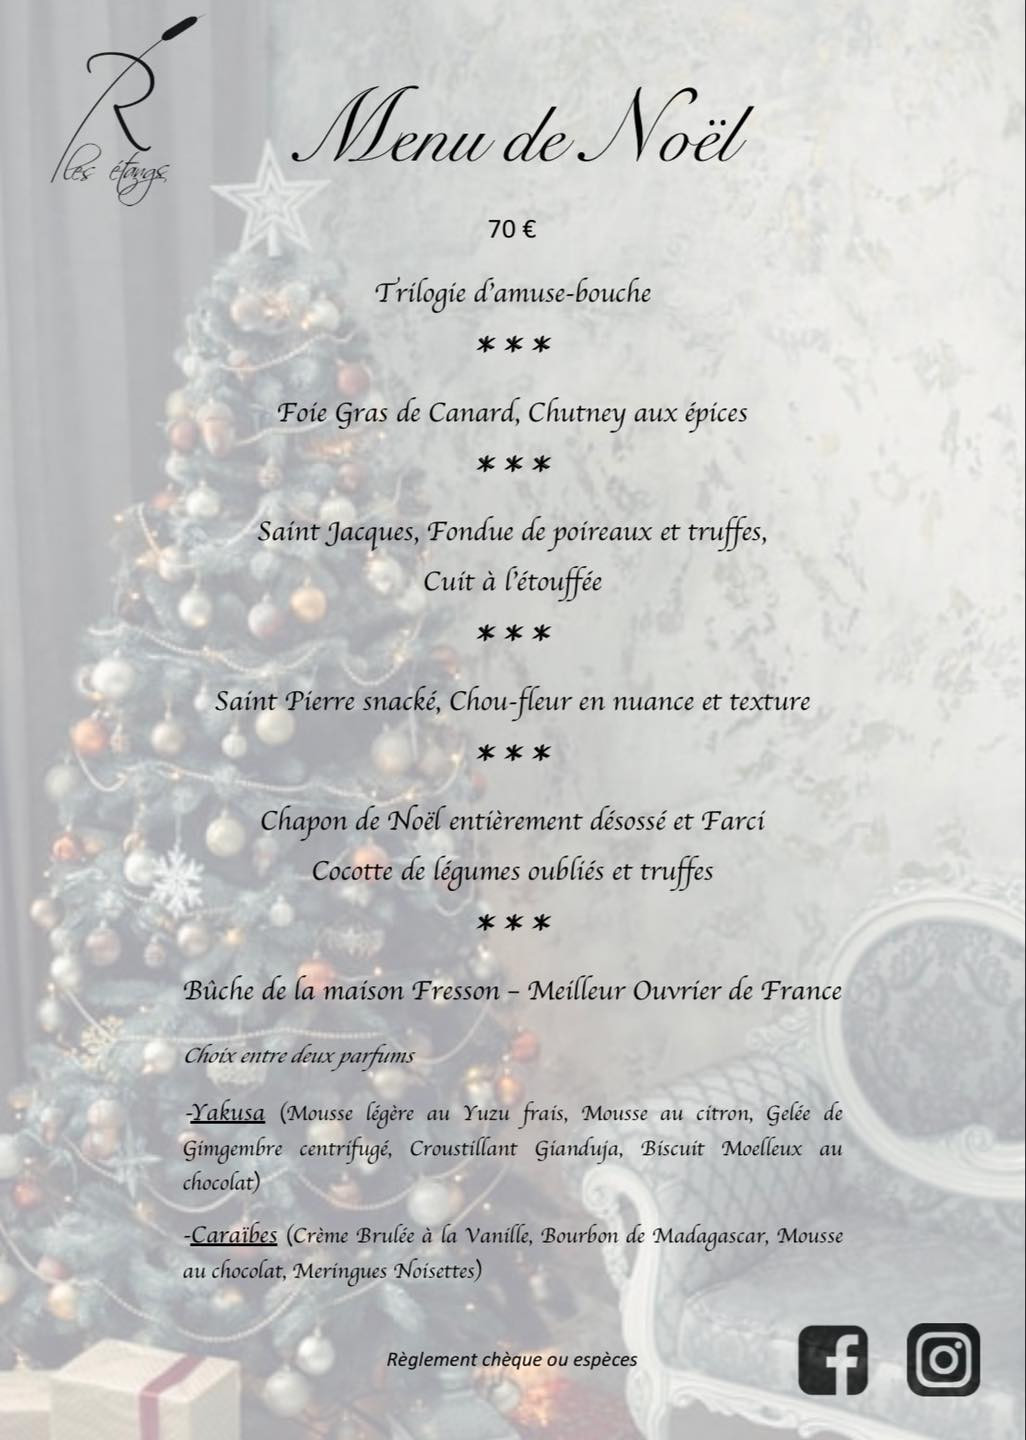 Le menu de Noël 2020 du restaurant Les Étangs de Manom. DR